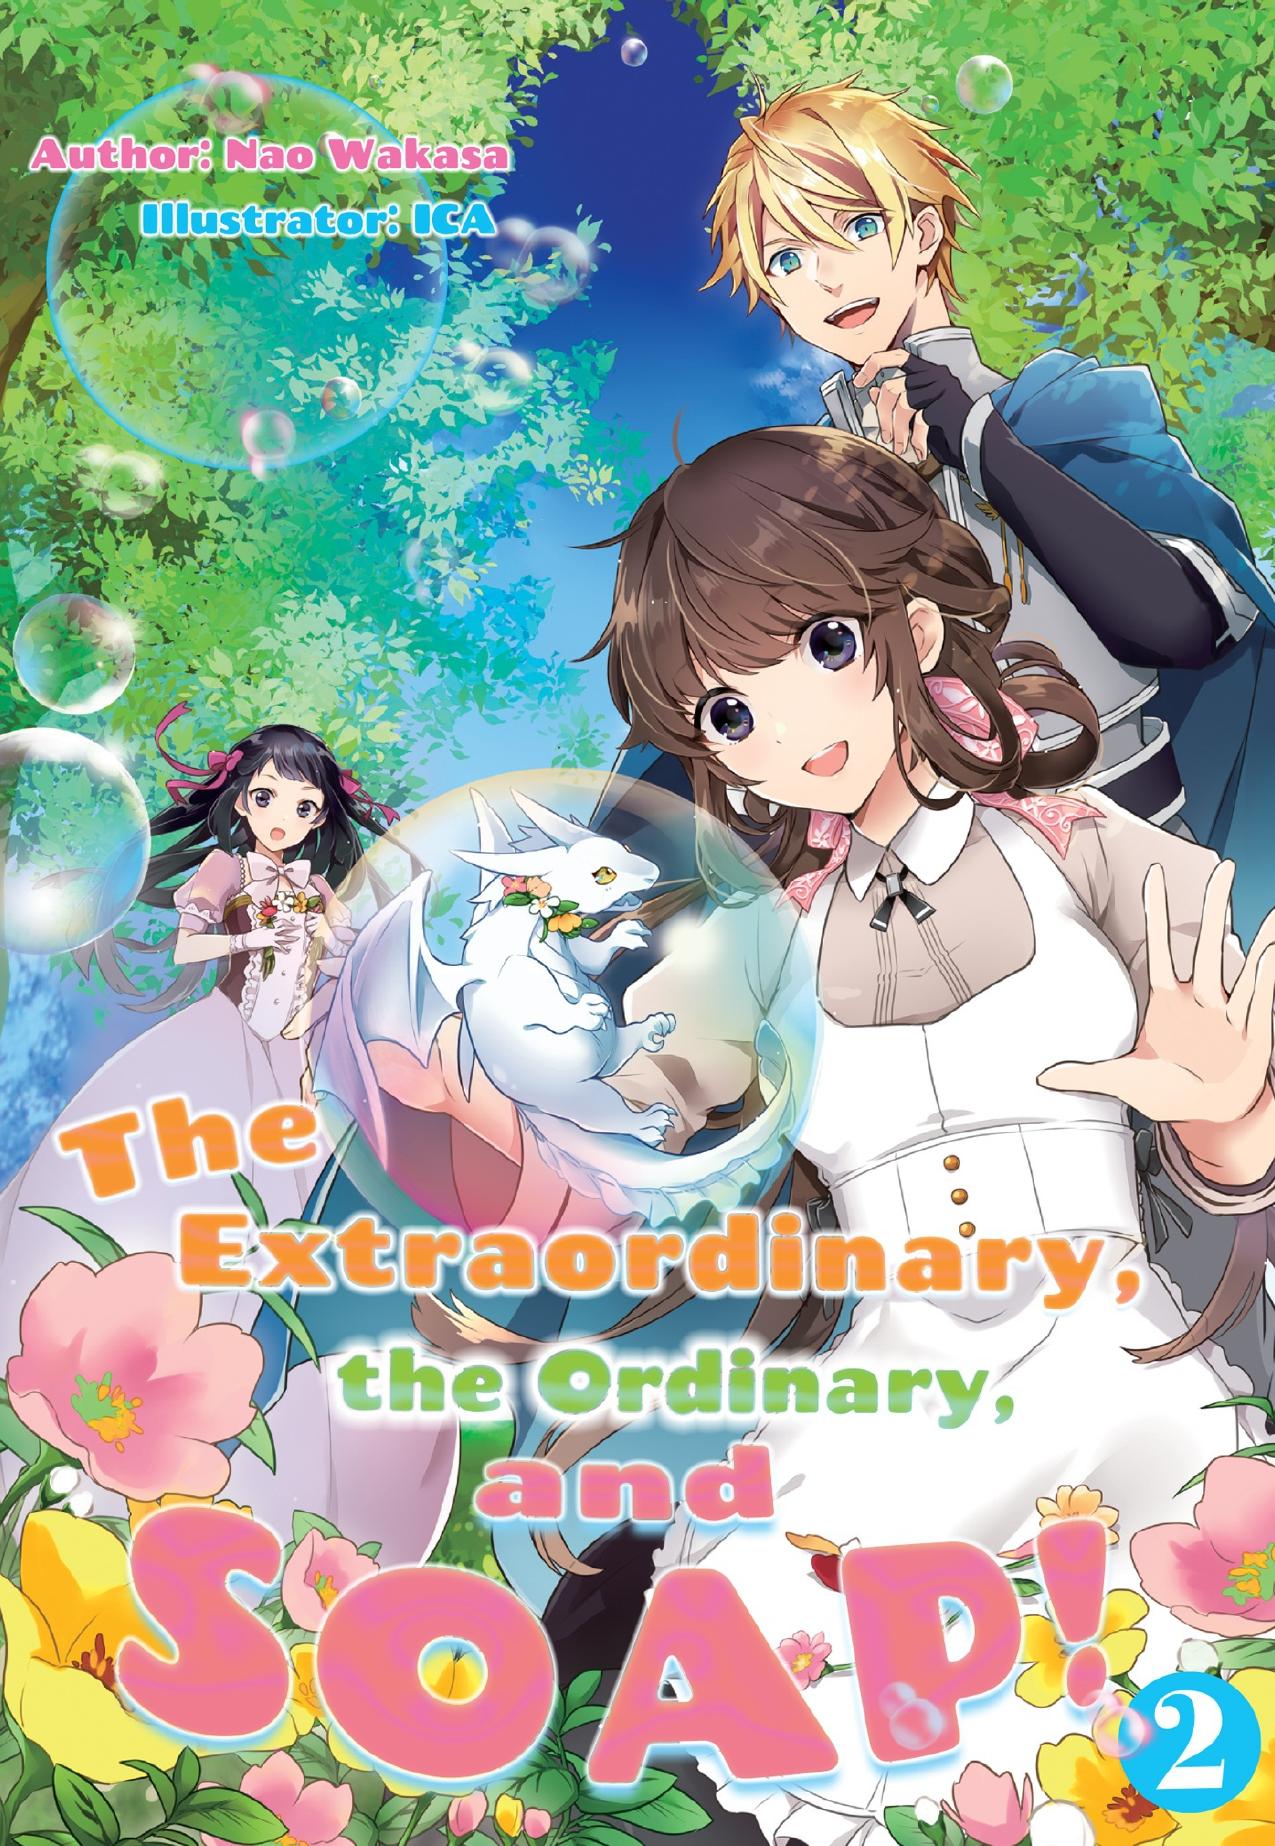 The Extraordinary, the Ordinary, and SOAP! Volume 2 by Nao Wakasa